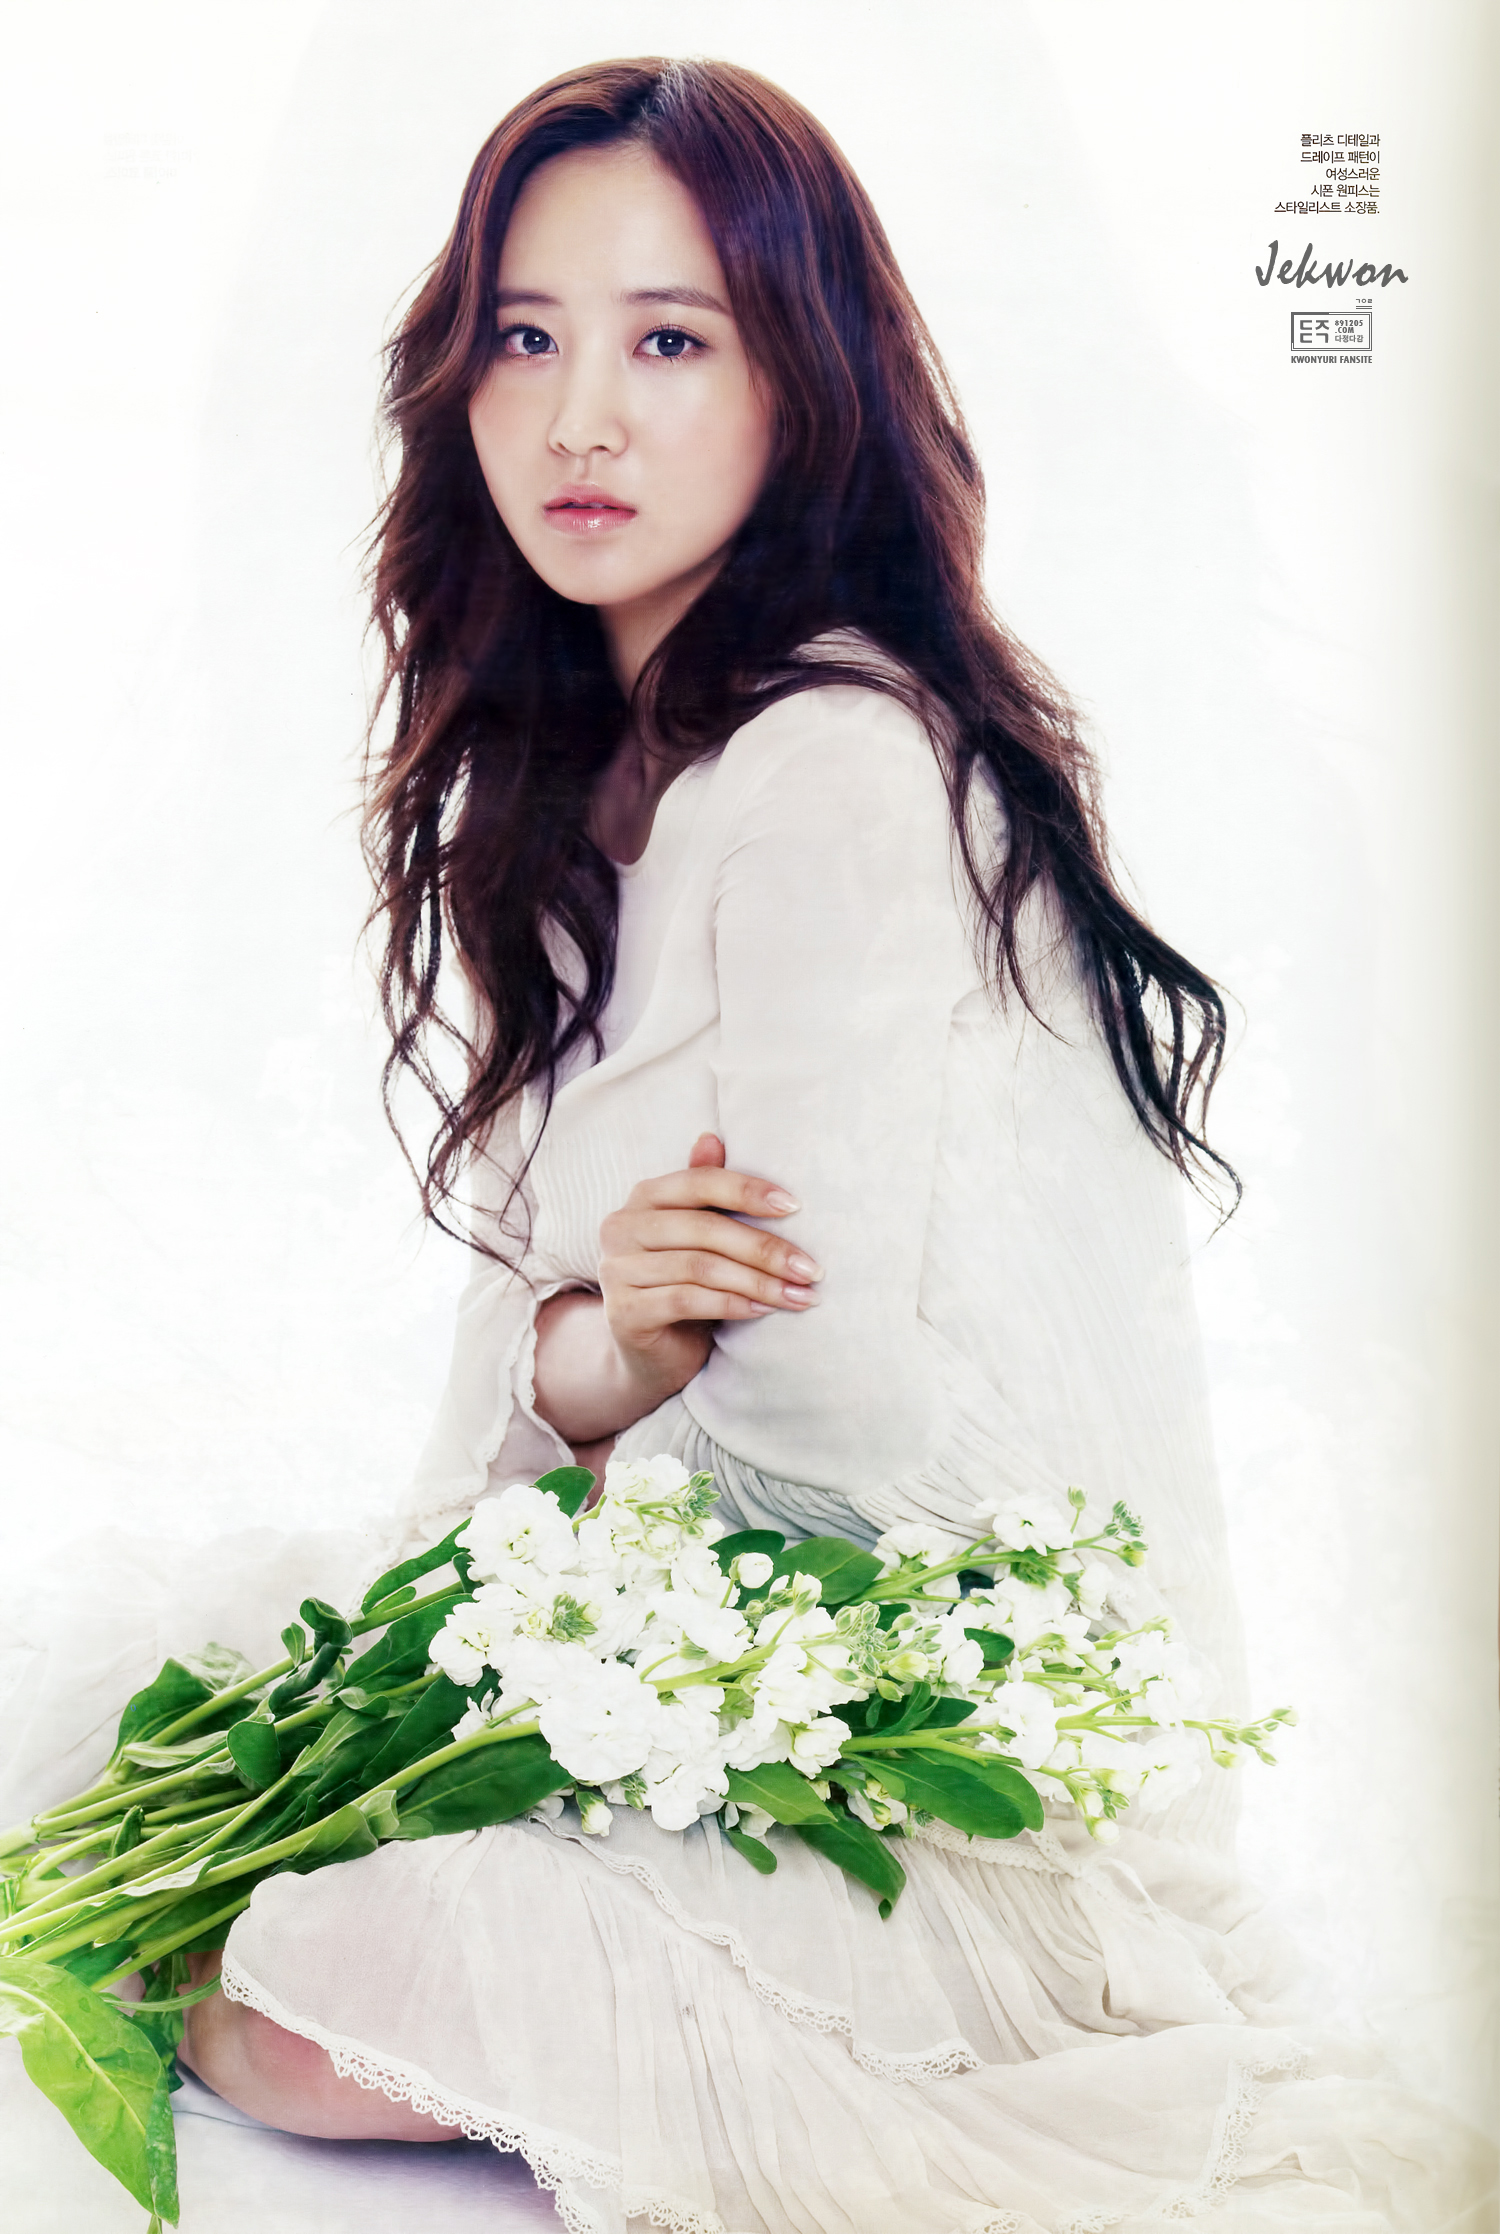 [PIC][01-04-2013]SooYoung và Yuri xuất hiện trên số đầu tiên của tạp chí "THE STAR" 11522F3E515B2B091E55CE